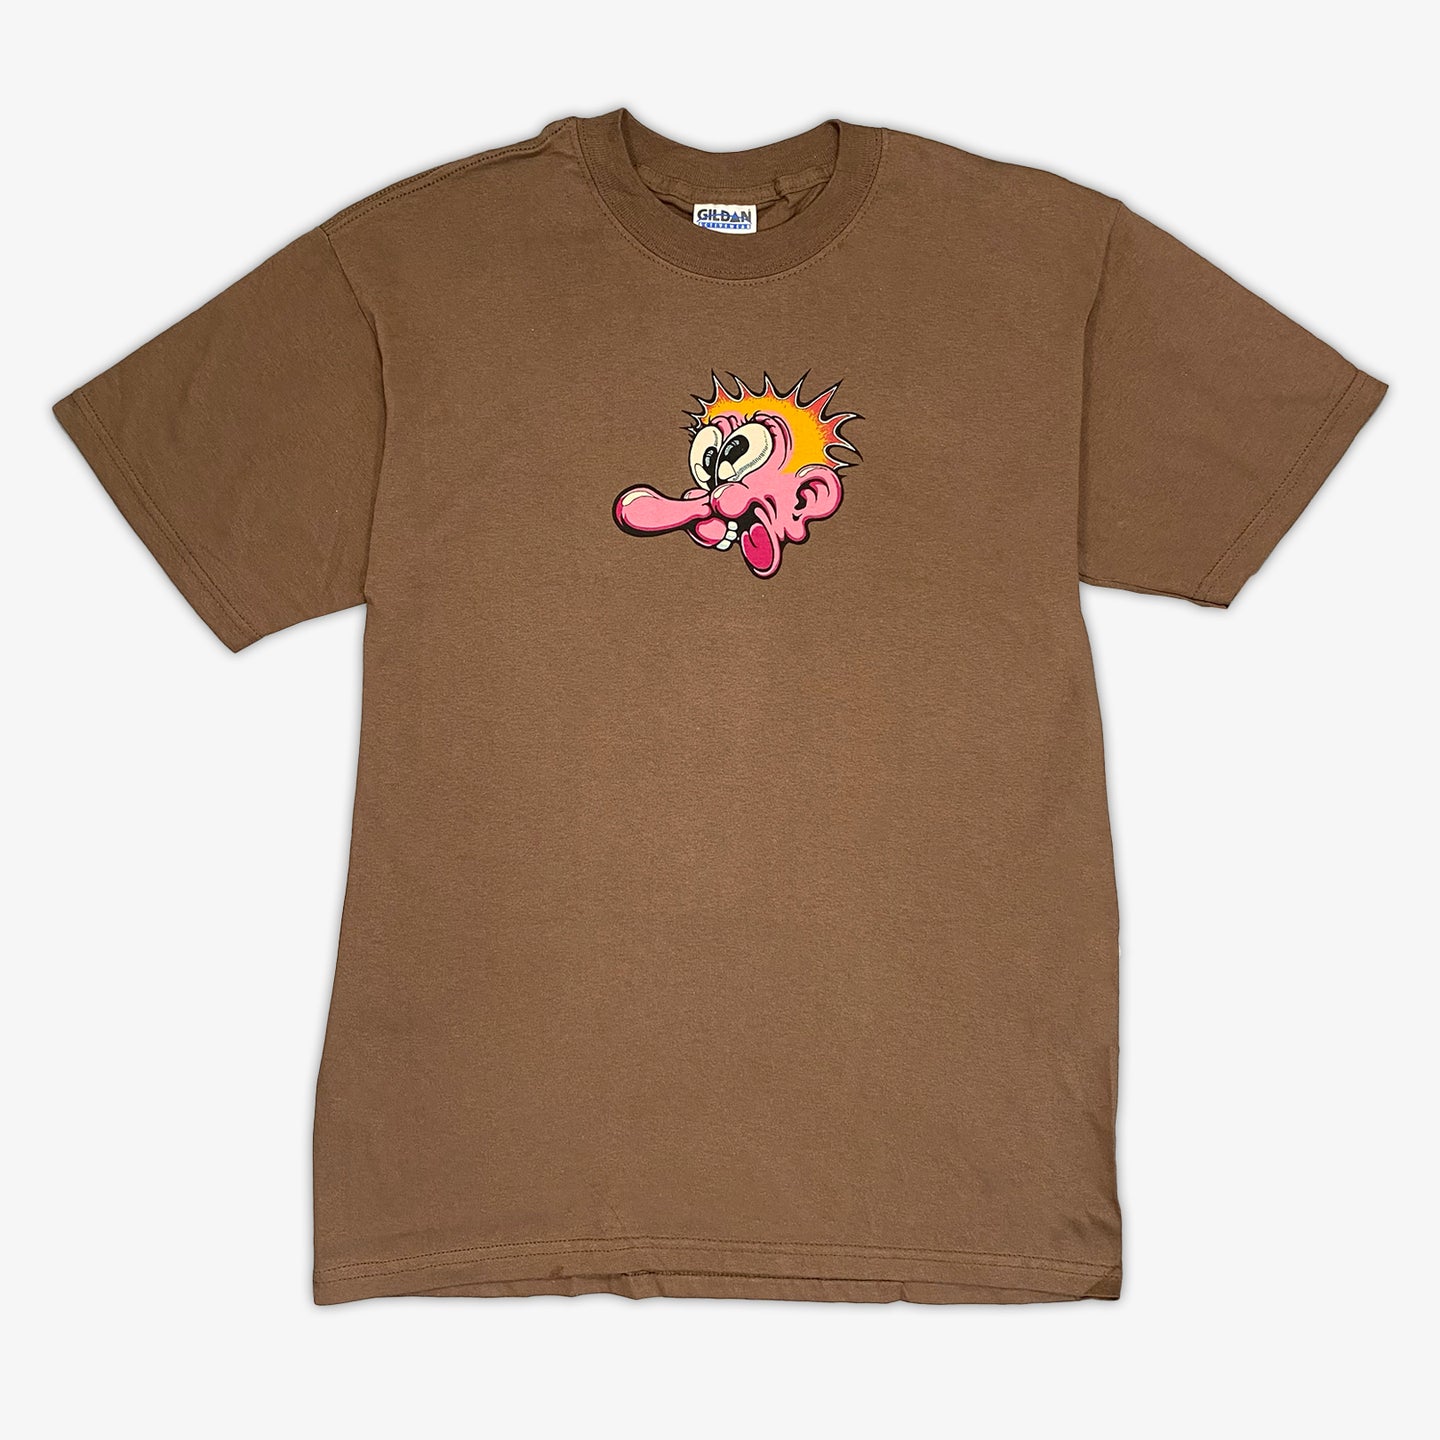 Robert Crumb T-Shirt (Brown)